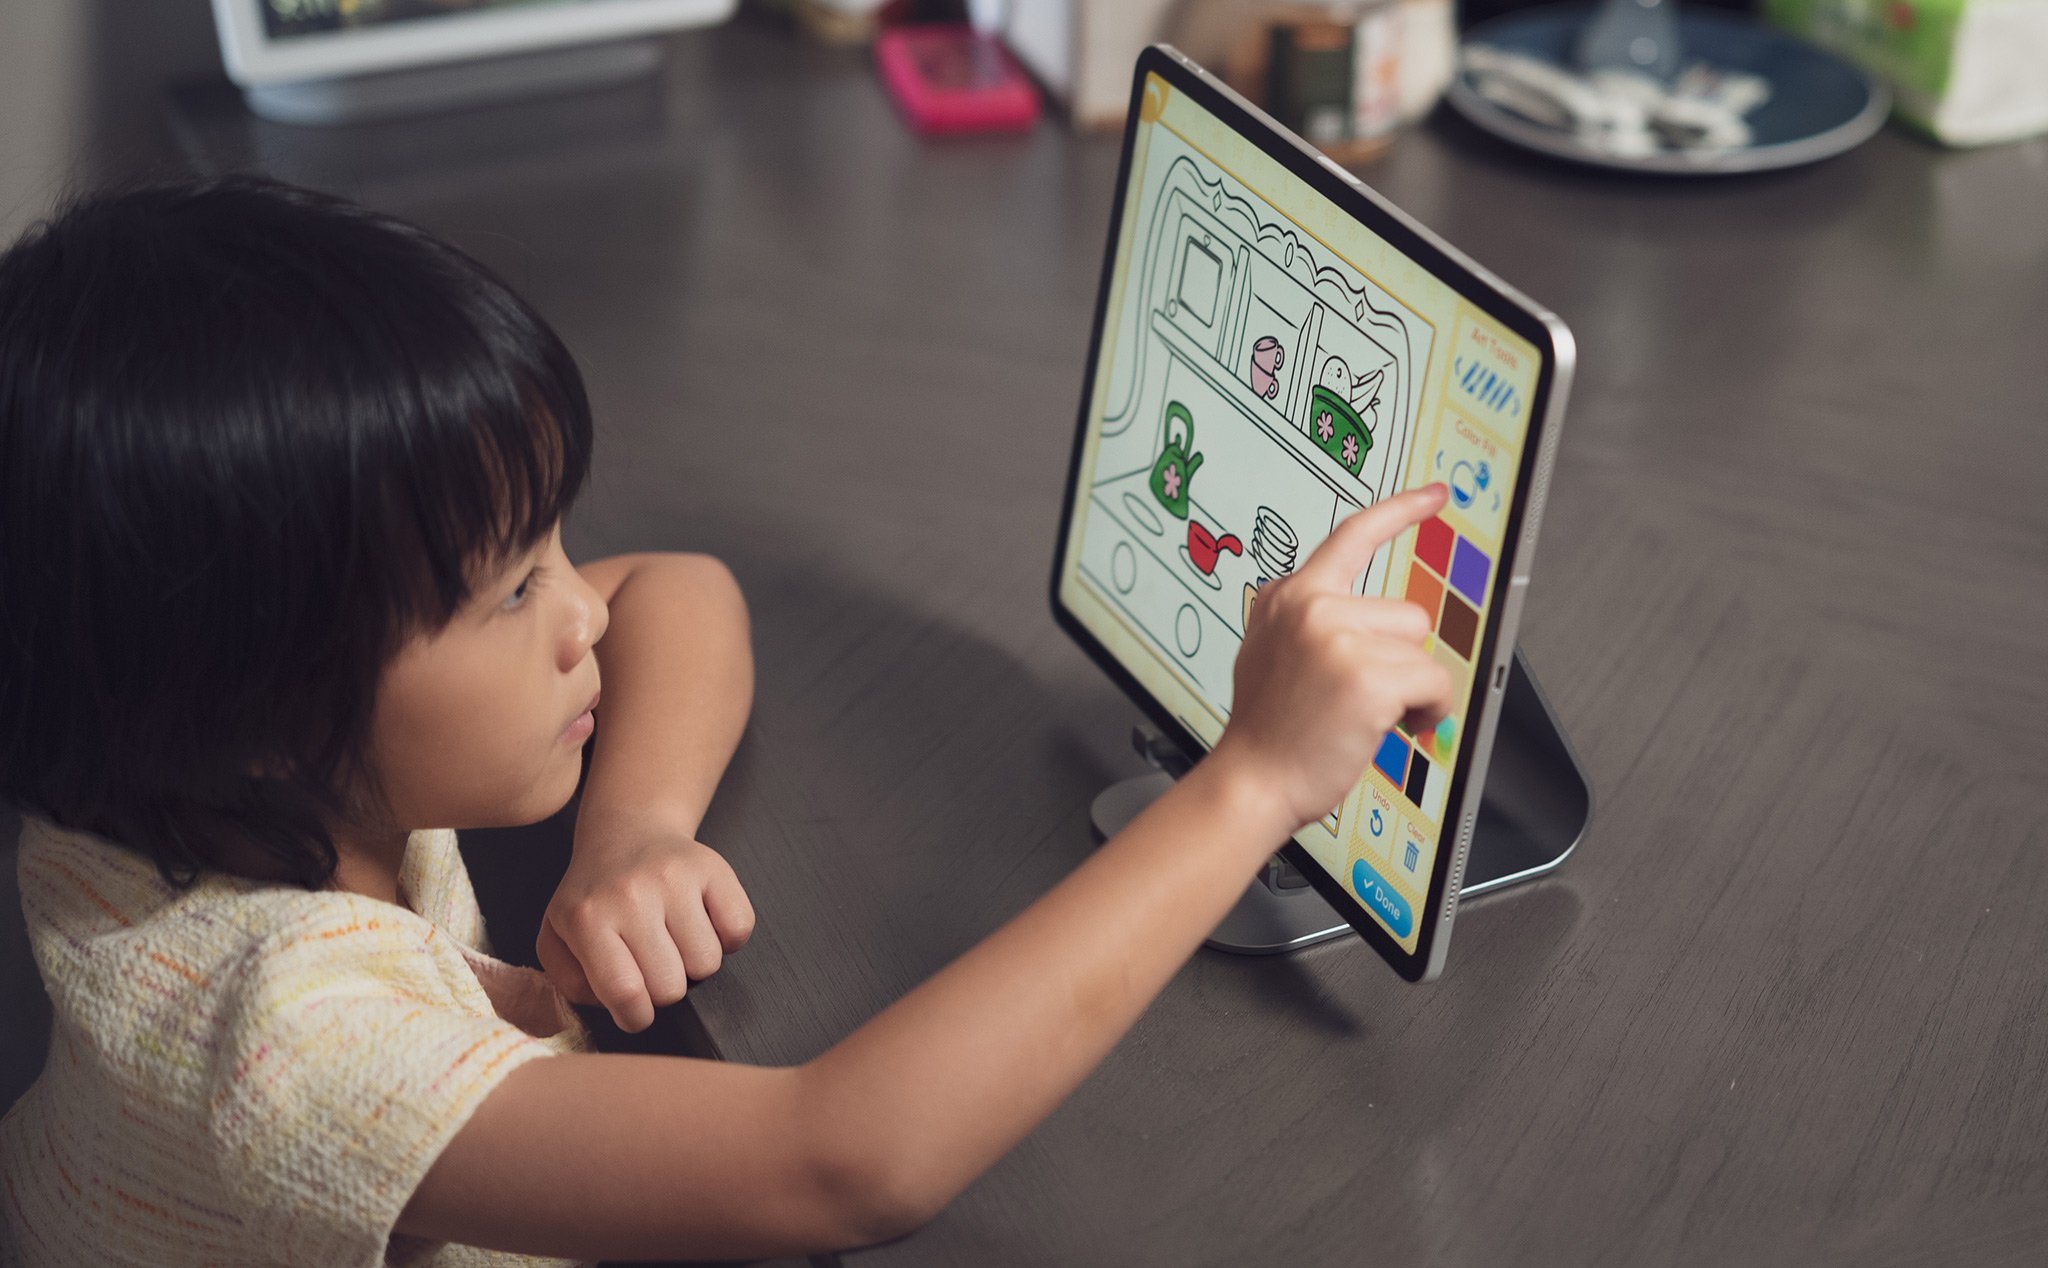 Trò chơi trên iPad cho trẻ em: Dành cho các bé yêu thích trò chơi, hãy cùng khơi nguồn sức sáng tạo và trí tưởng tượng của bé với bộ sưu tập trò chơi đa dạng trên iPad. Bé sẽ được vui chơi và học hỏi những bài học quý báu trong những trò chơi thú vị.